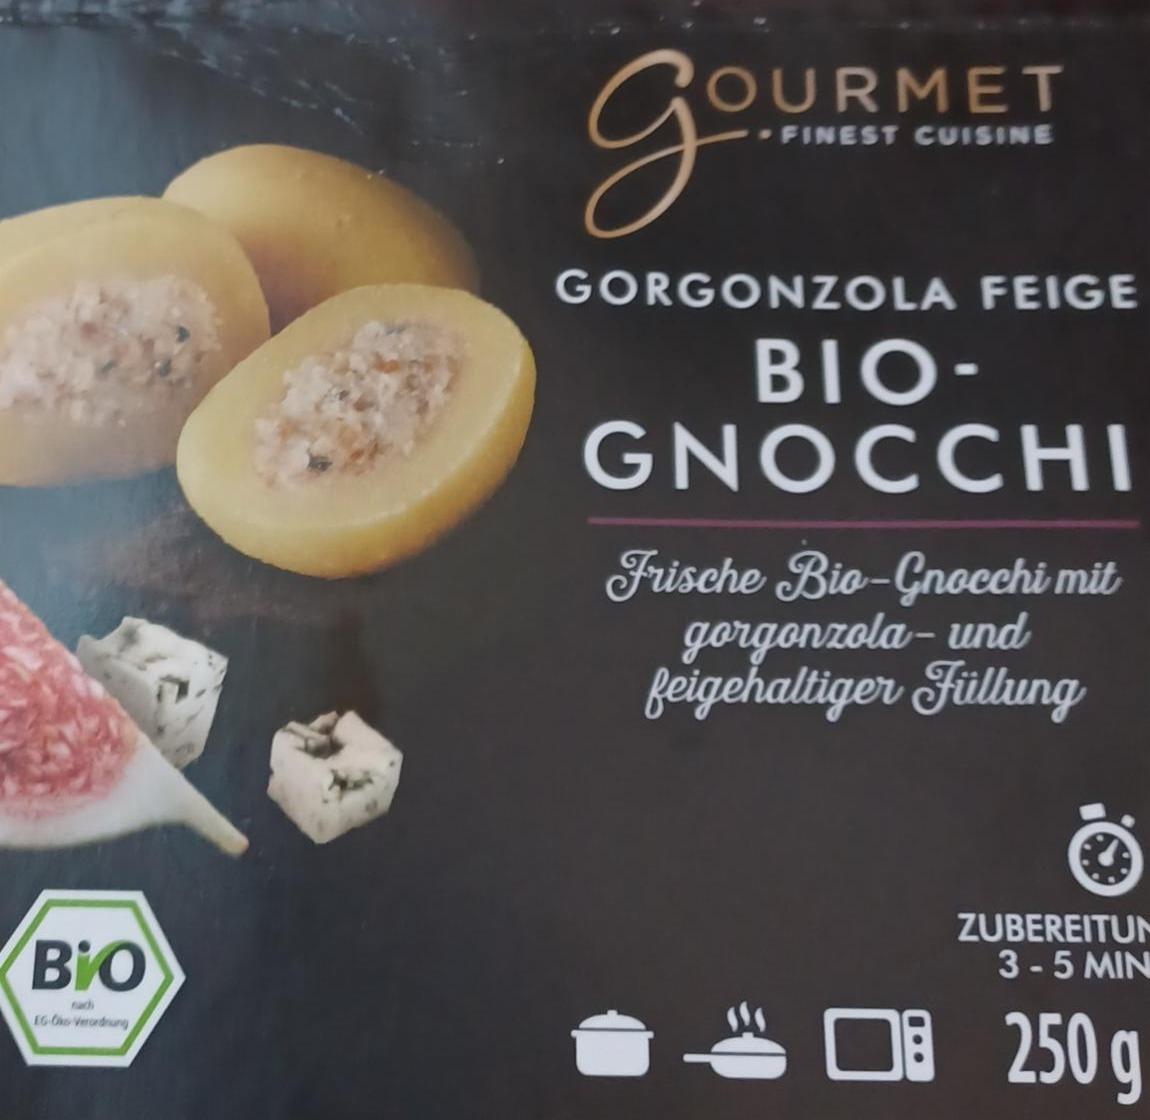 Фото - Gorgonzola Feige Bio-Gnocchi Gourmet